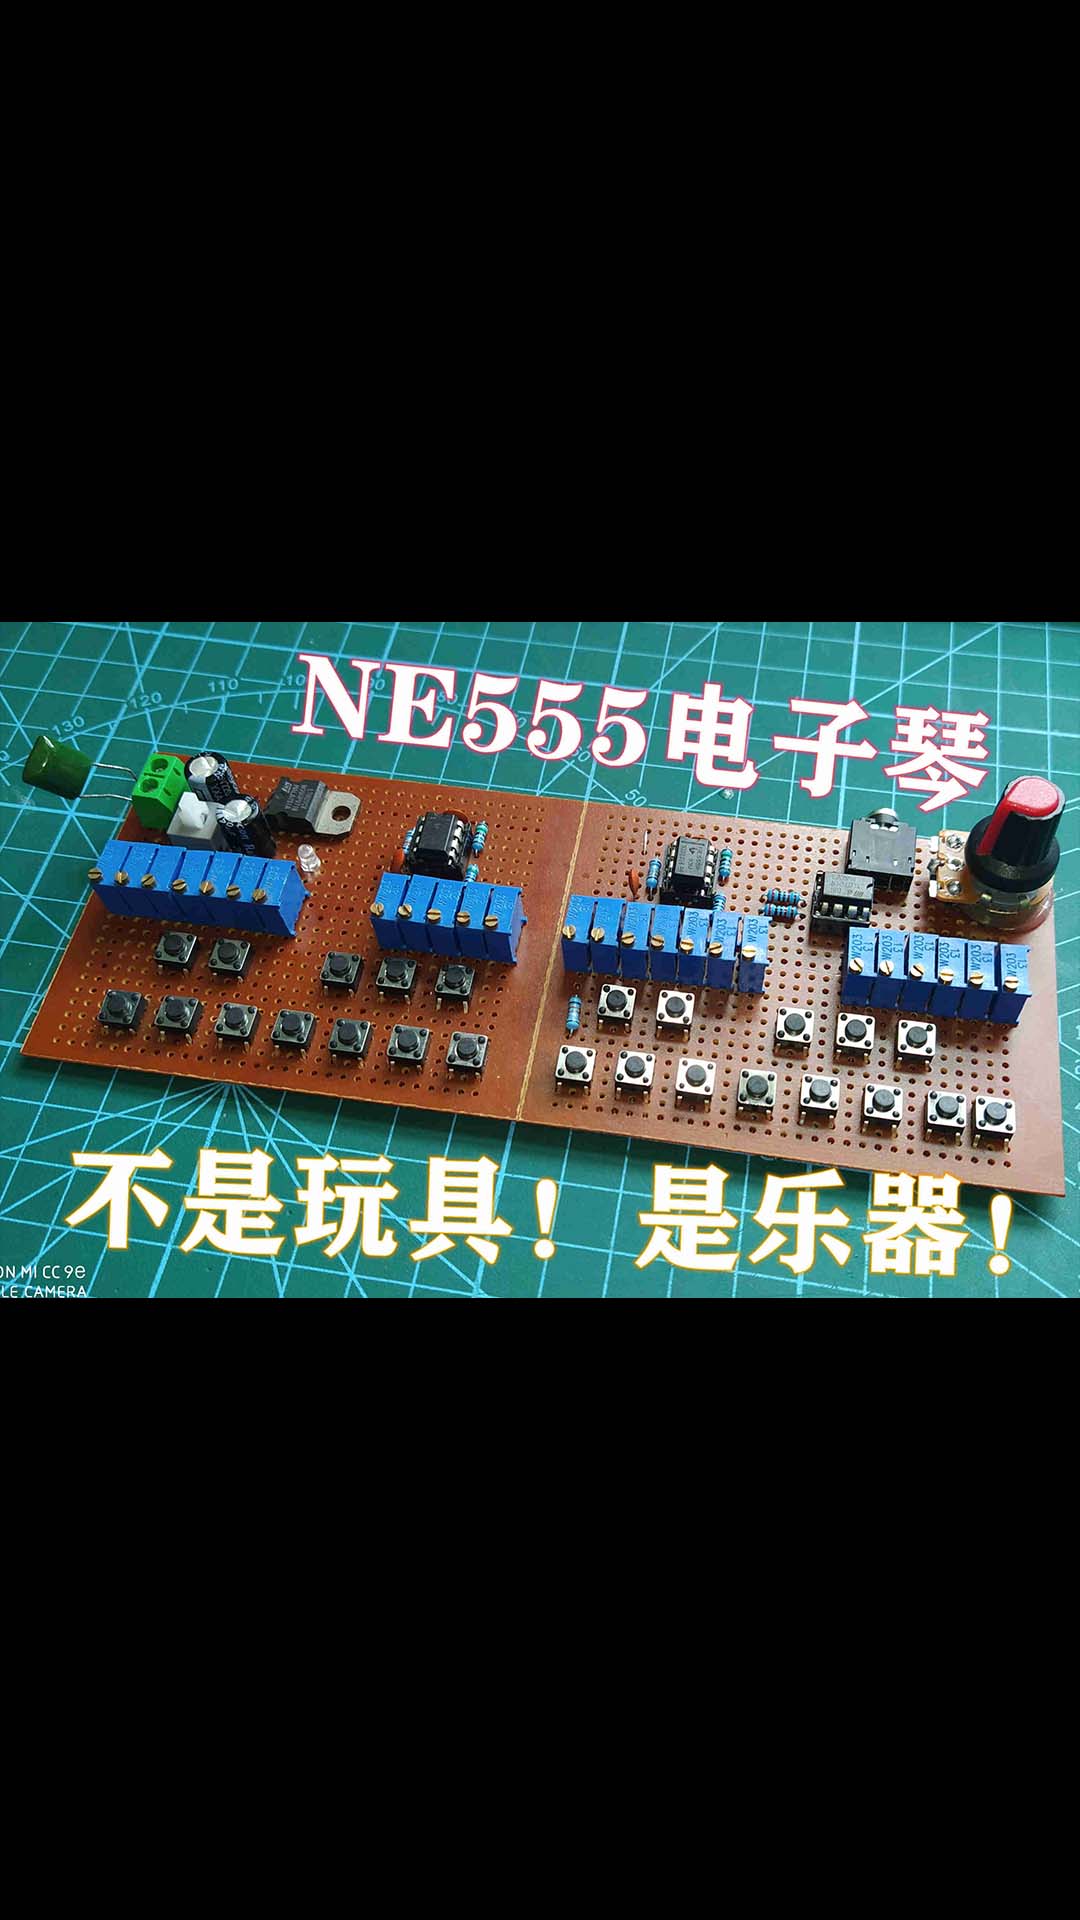 NE555电子琴全新制作方案！不是玩具！